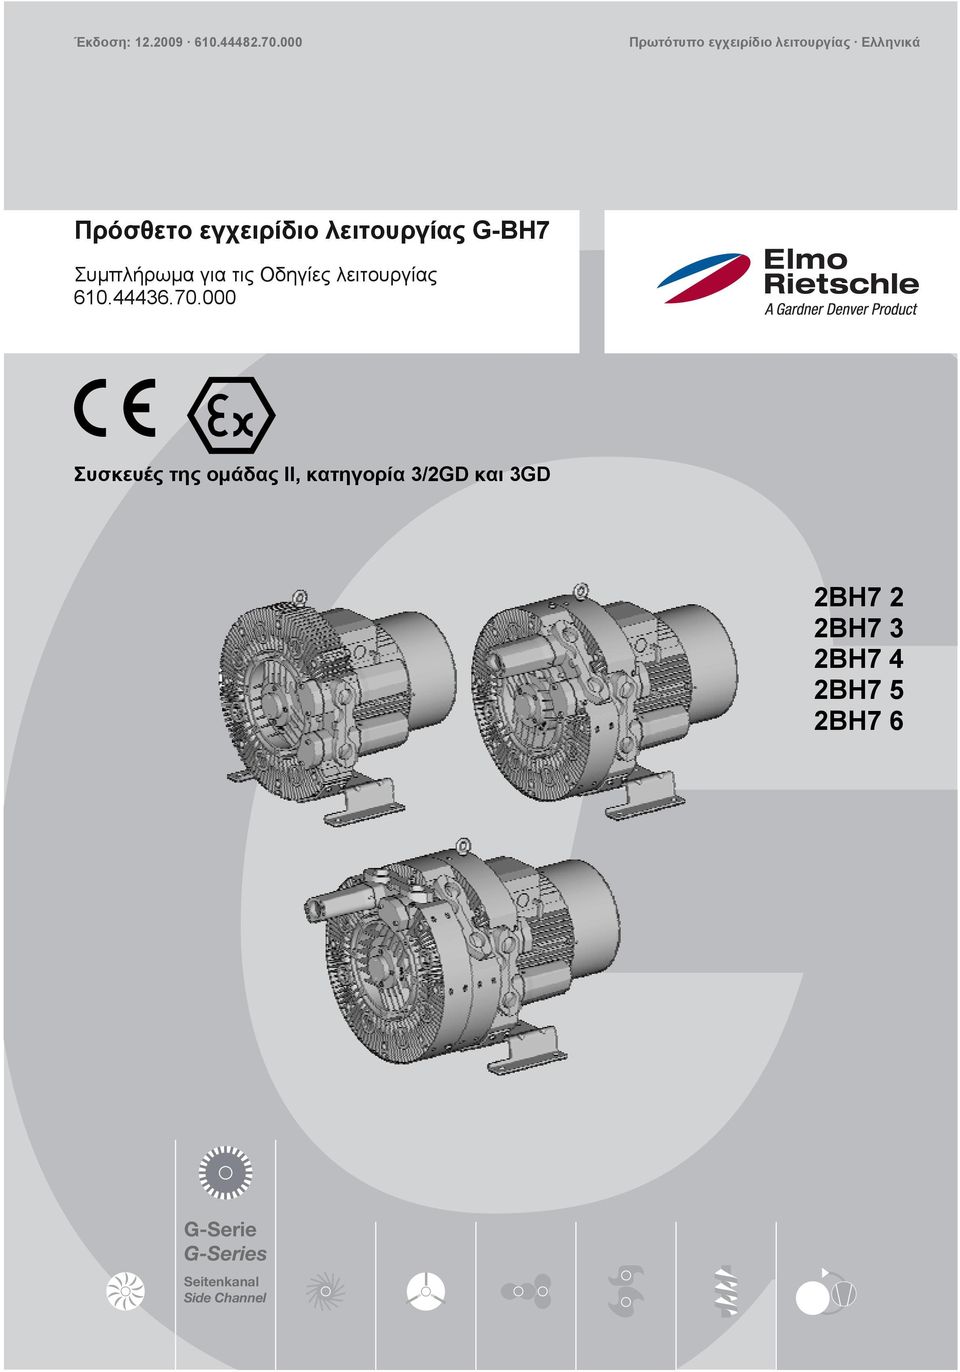 λειτουργίας G-BH7 Συμπλήρωμα για τις Οδηγίες λειτουργίας 610.44436.70.